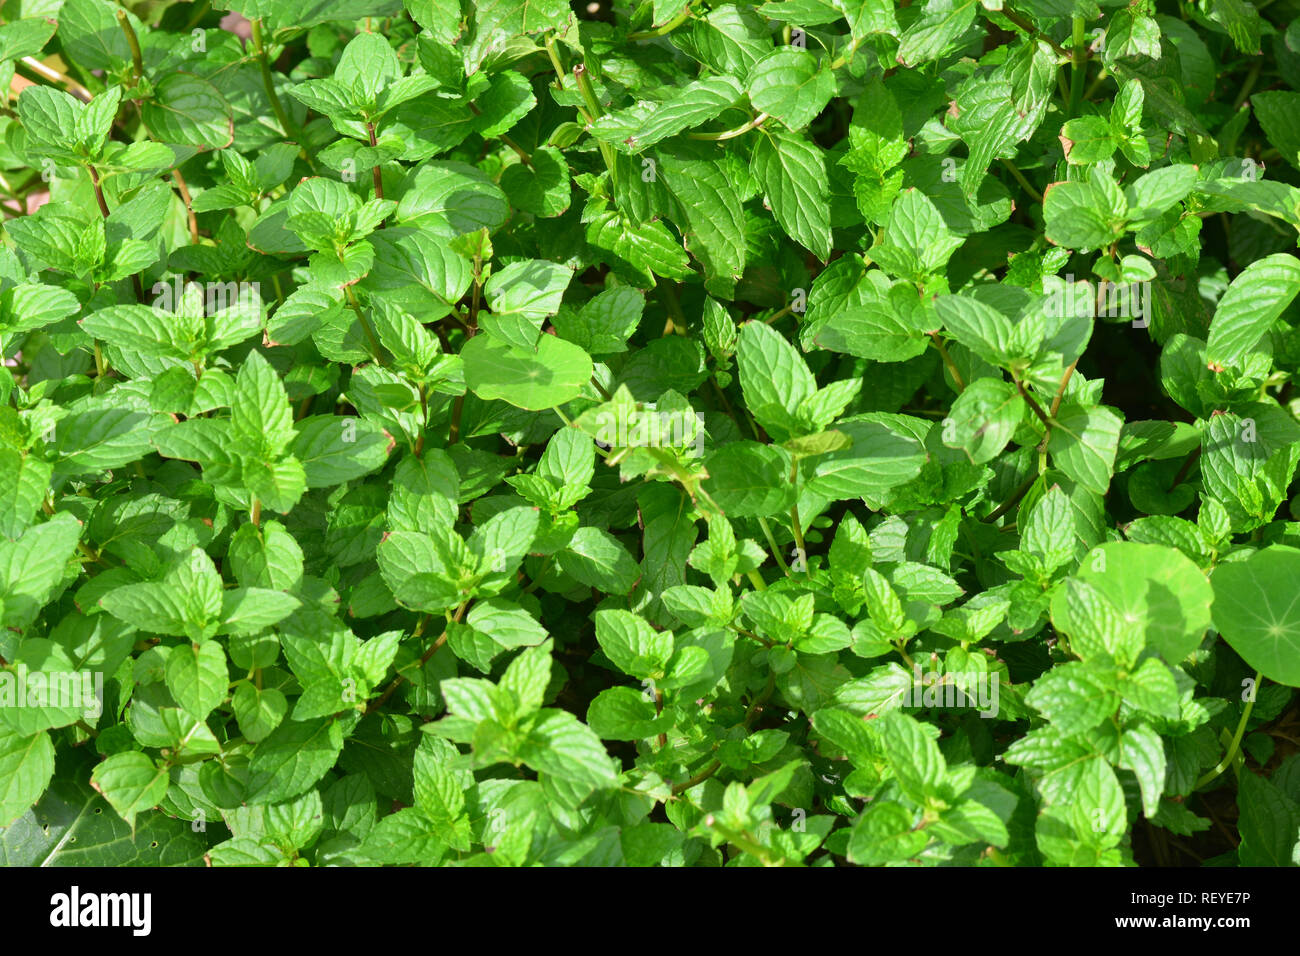 Die grüne Minze, oder Speer Minze (Mentha Spicata) (auch bekannt als Mentha viridis) ist eine Pflanzenart aus der Gattung der Minze native zu viel von Europa und Asien Stockfoto